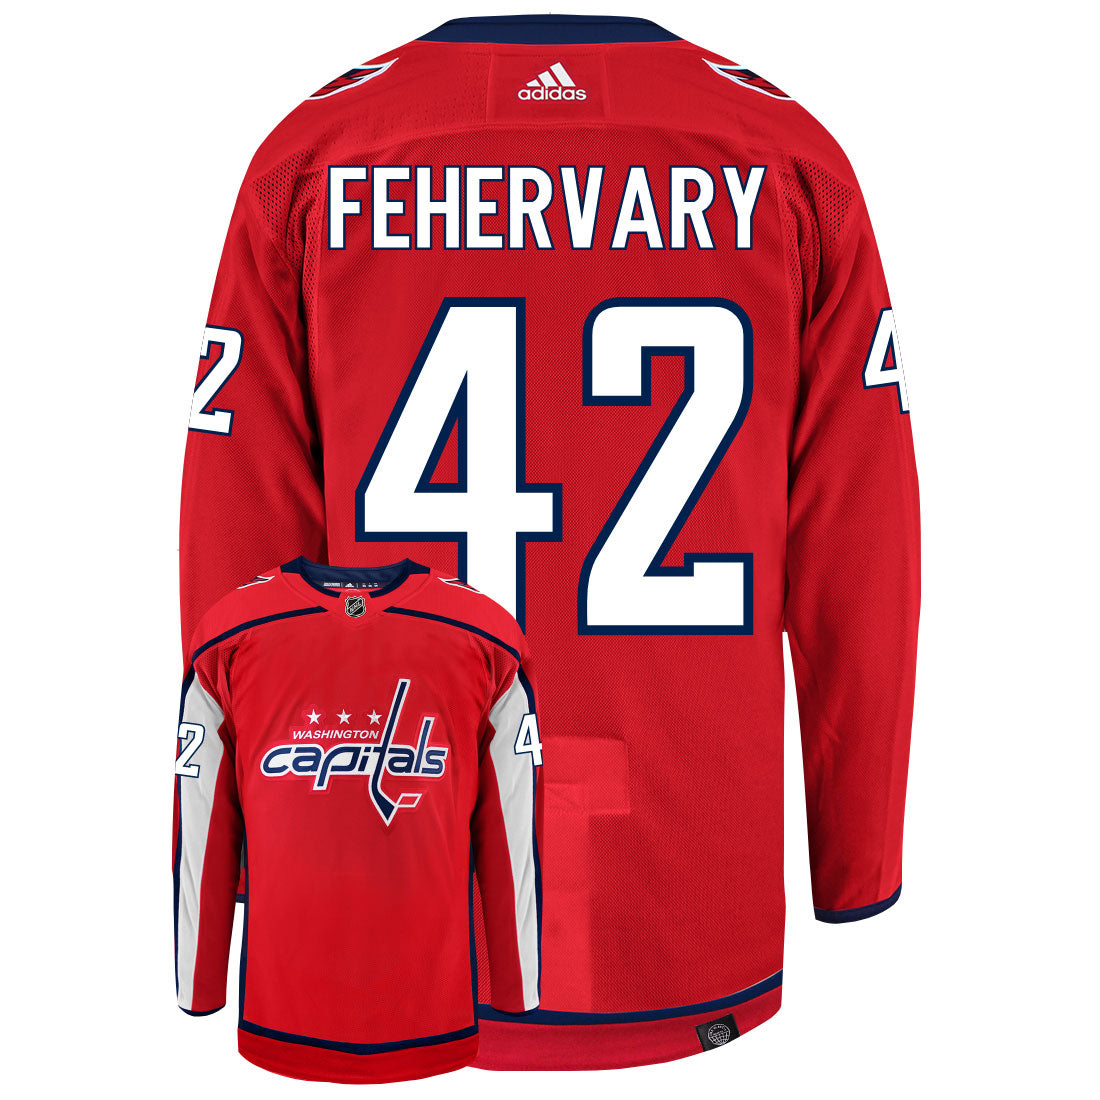 Martin Fehervary Washington Capitals Adidas Primegreen Authentic NHL Hockey Jersey